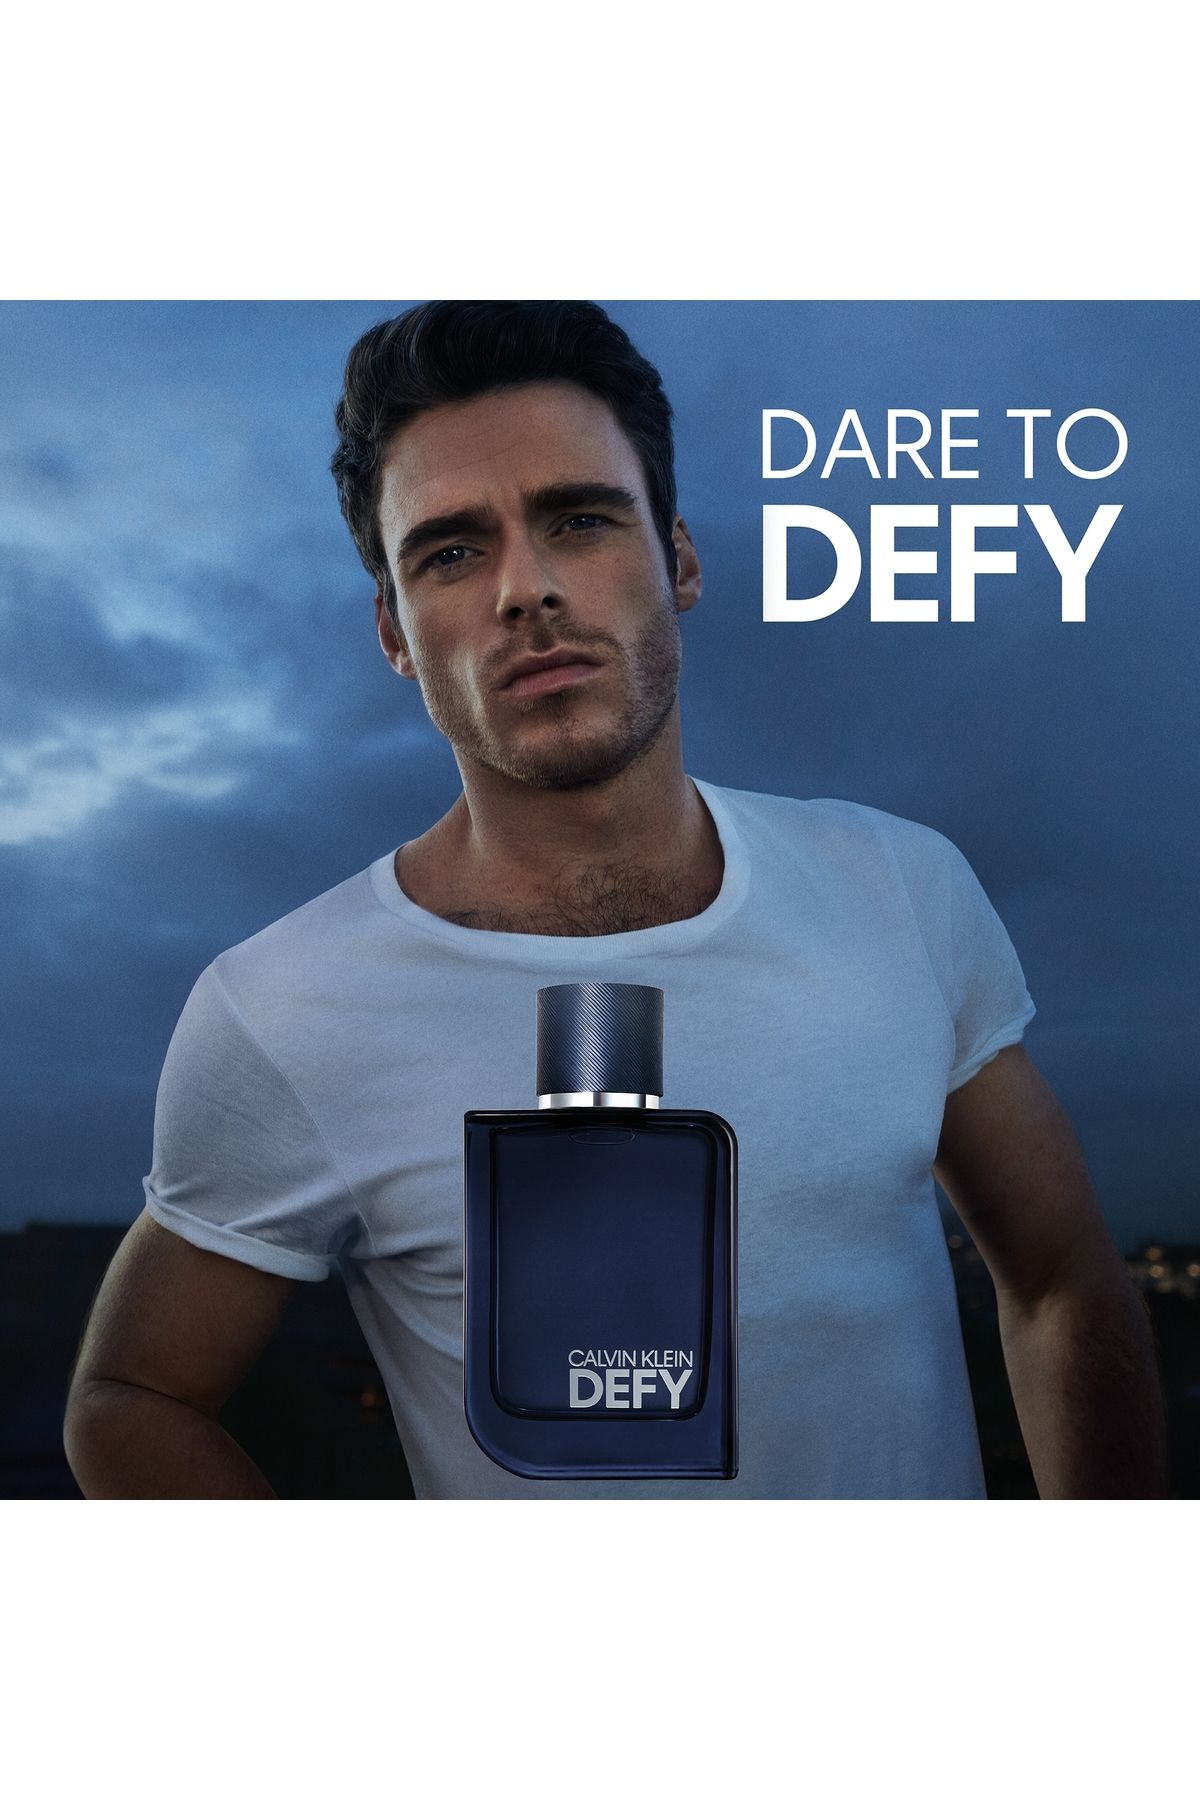 Calvin Klein Defy Parfum 100 ml